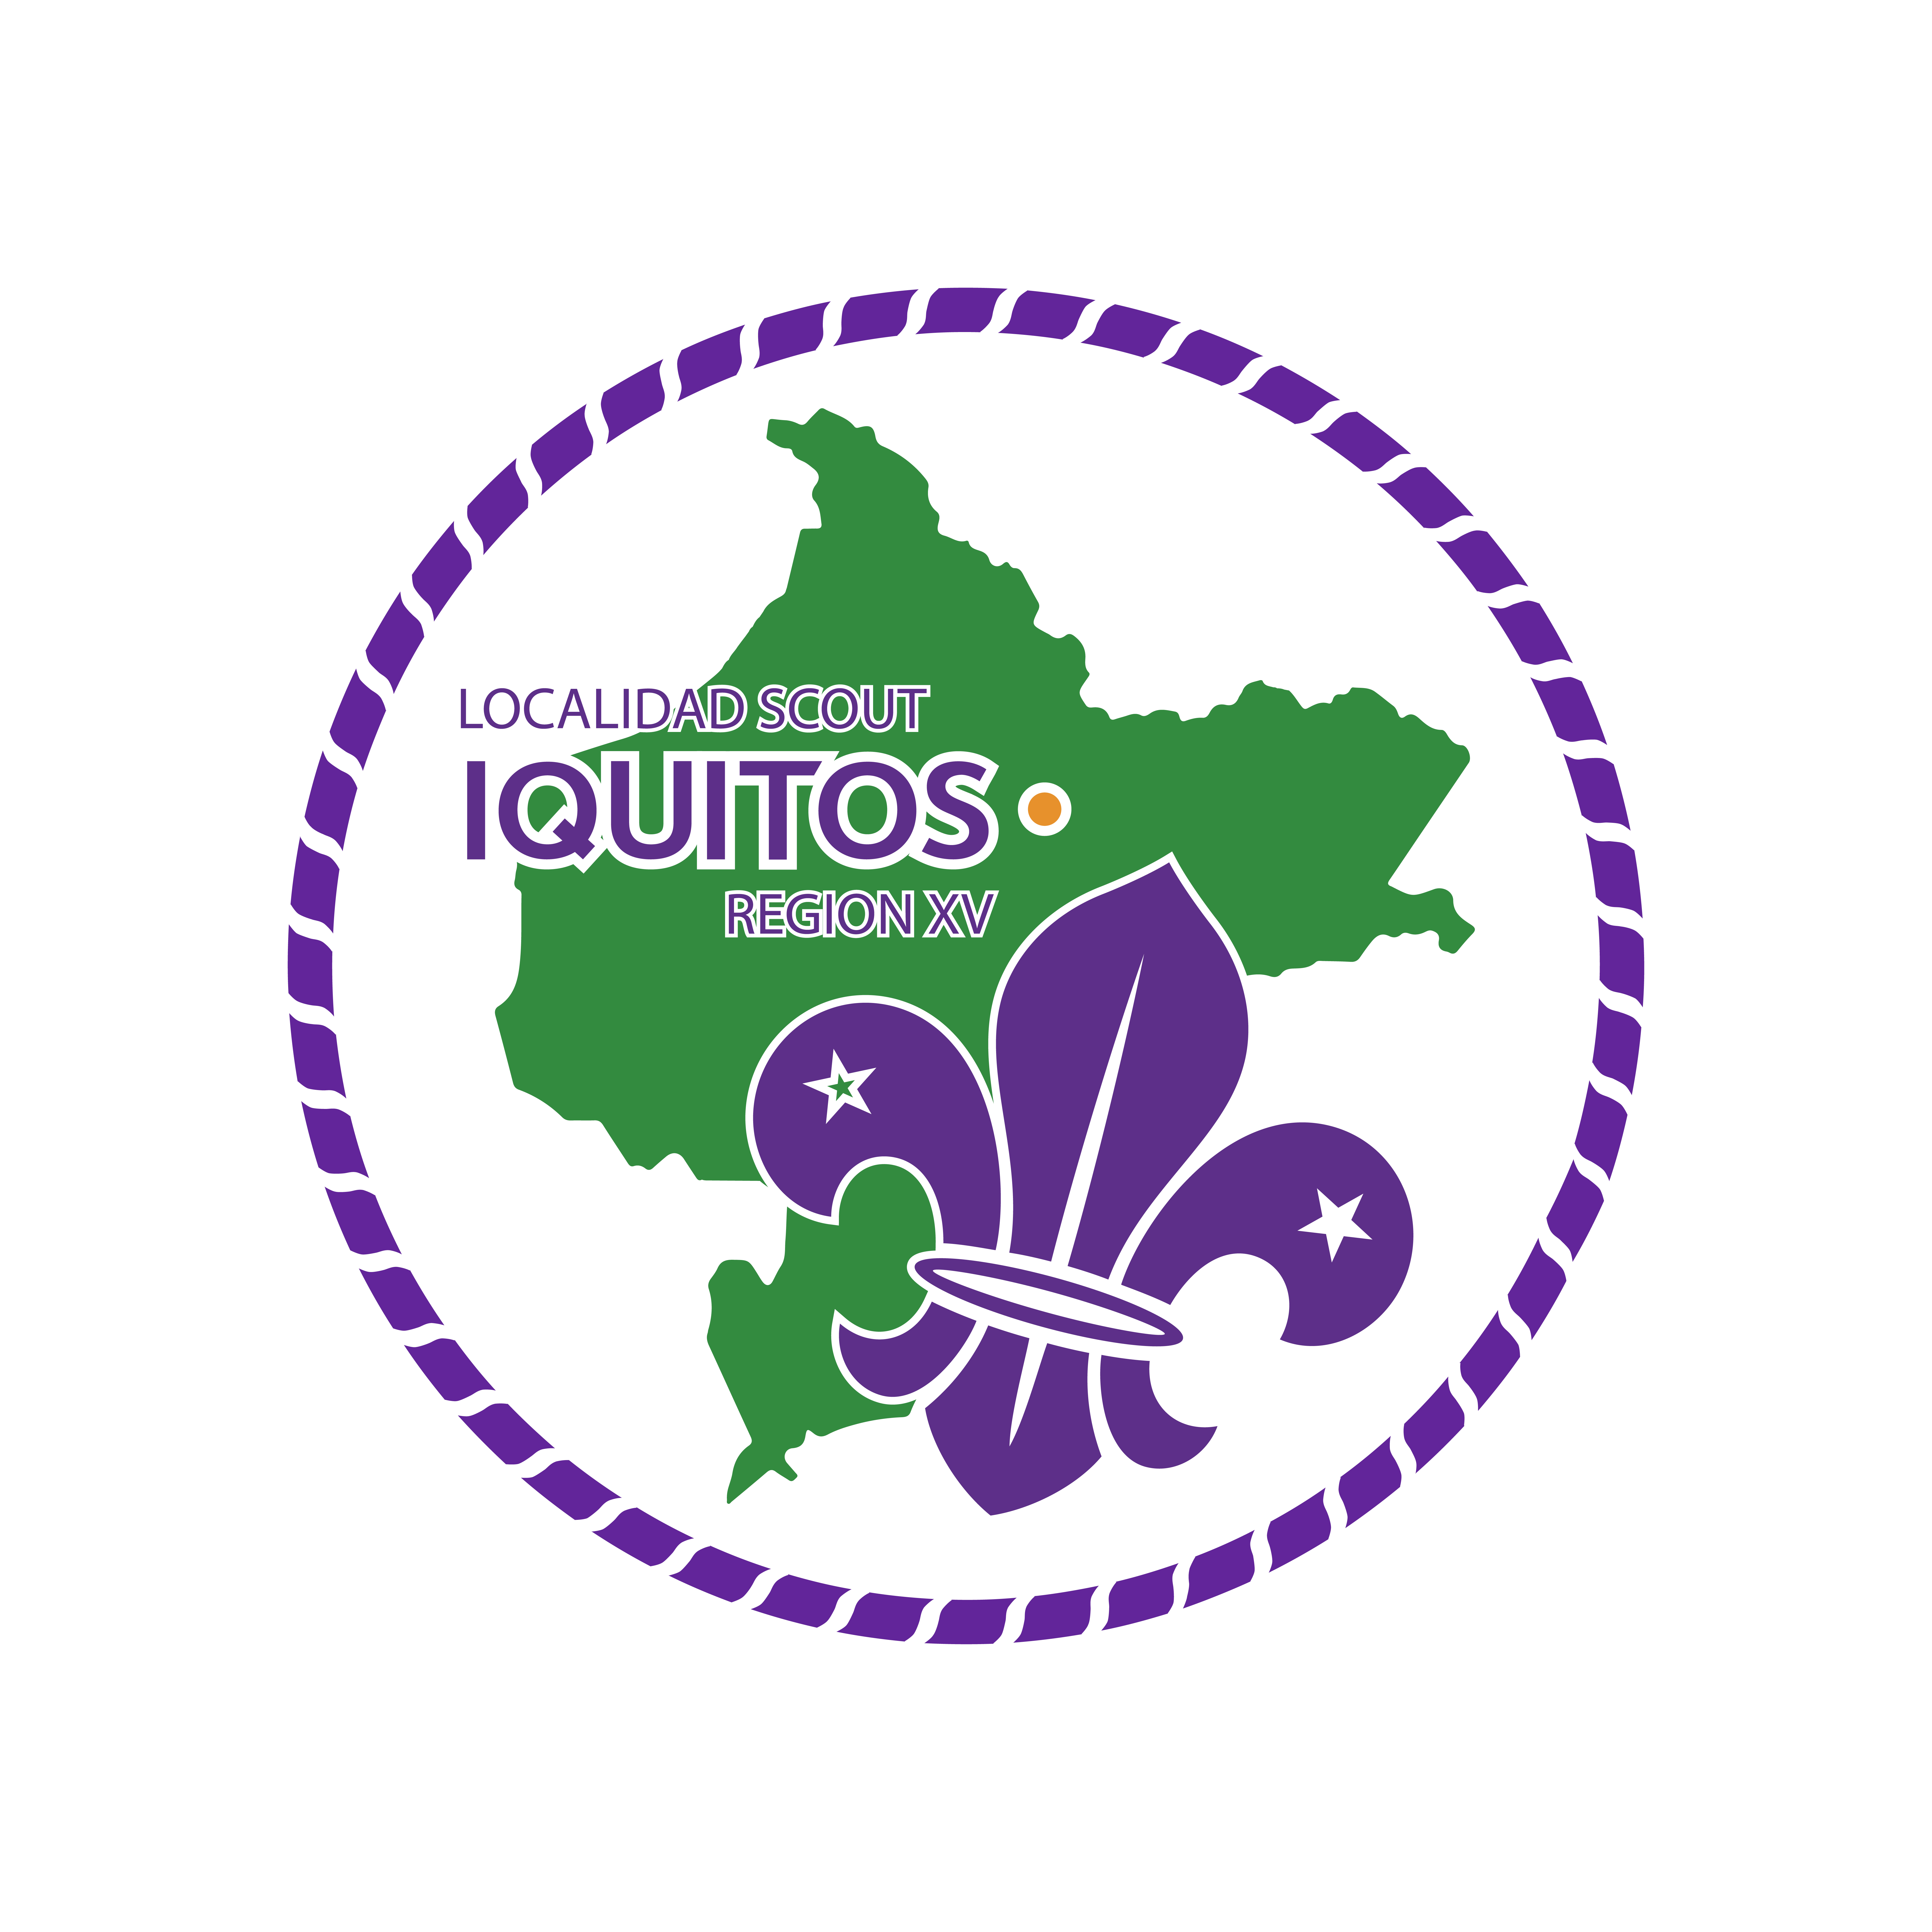 Descargar Logo Vectorizado Localidad Scout Iquitos Gratis